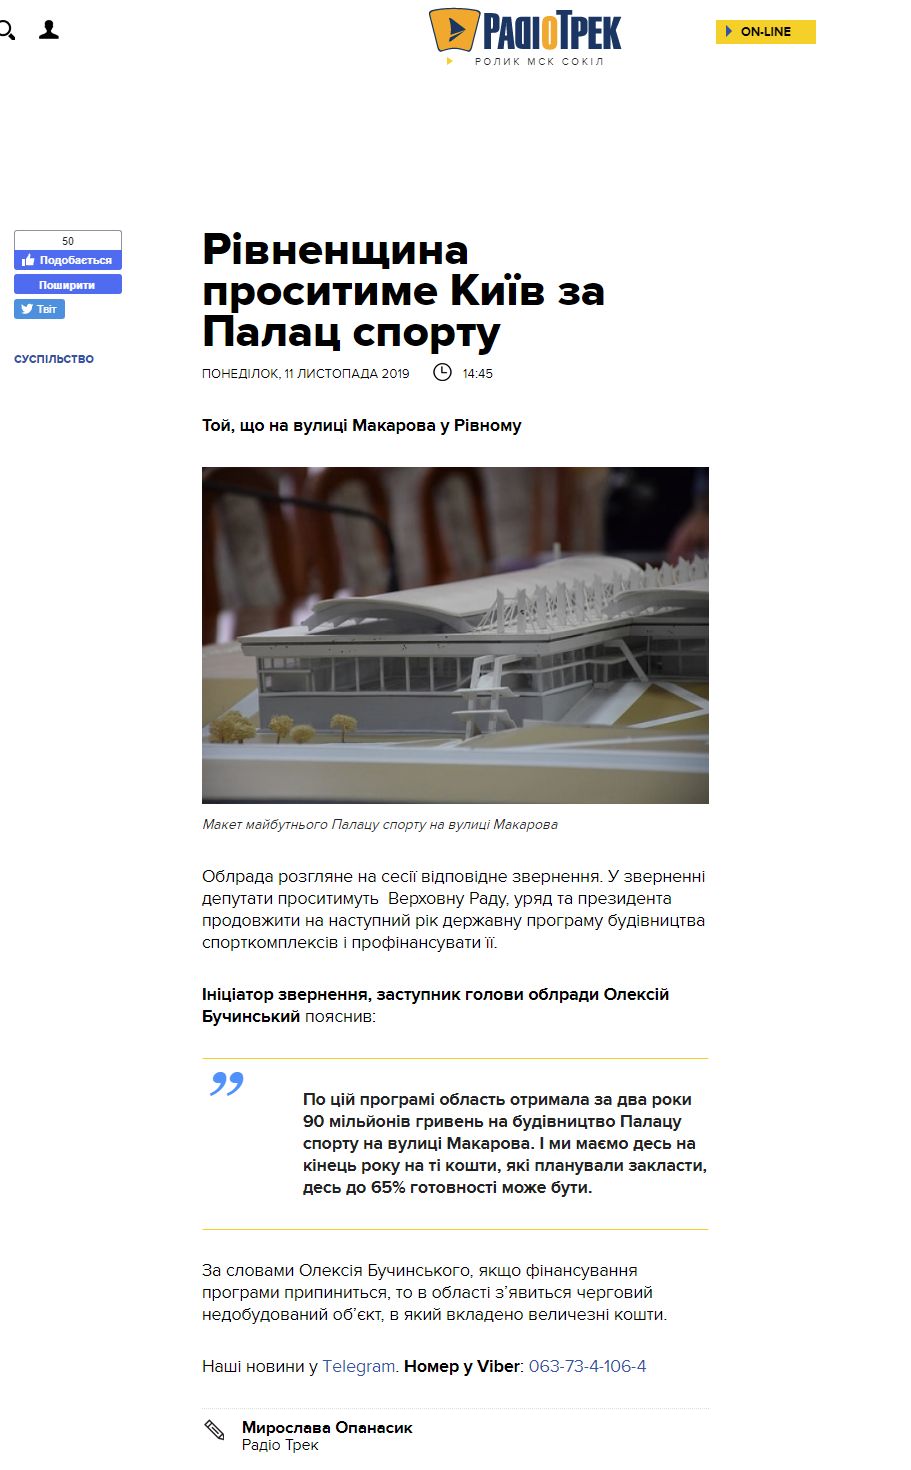 https://radiotrek.rv.ua/news/rivnenshchyna_prosytyme_kyiv_za_palats_sportu_na_makarova_242104.html